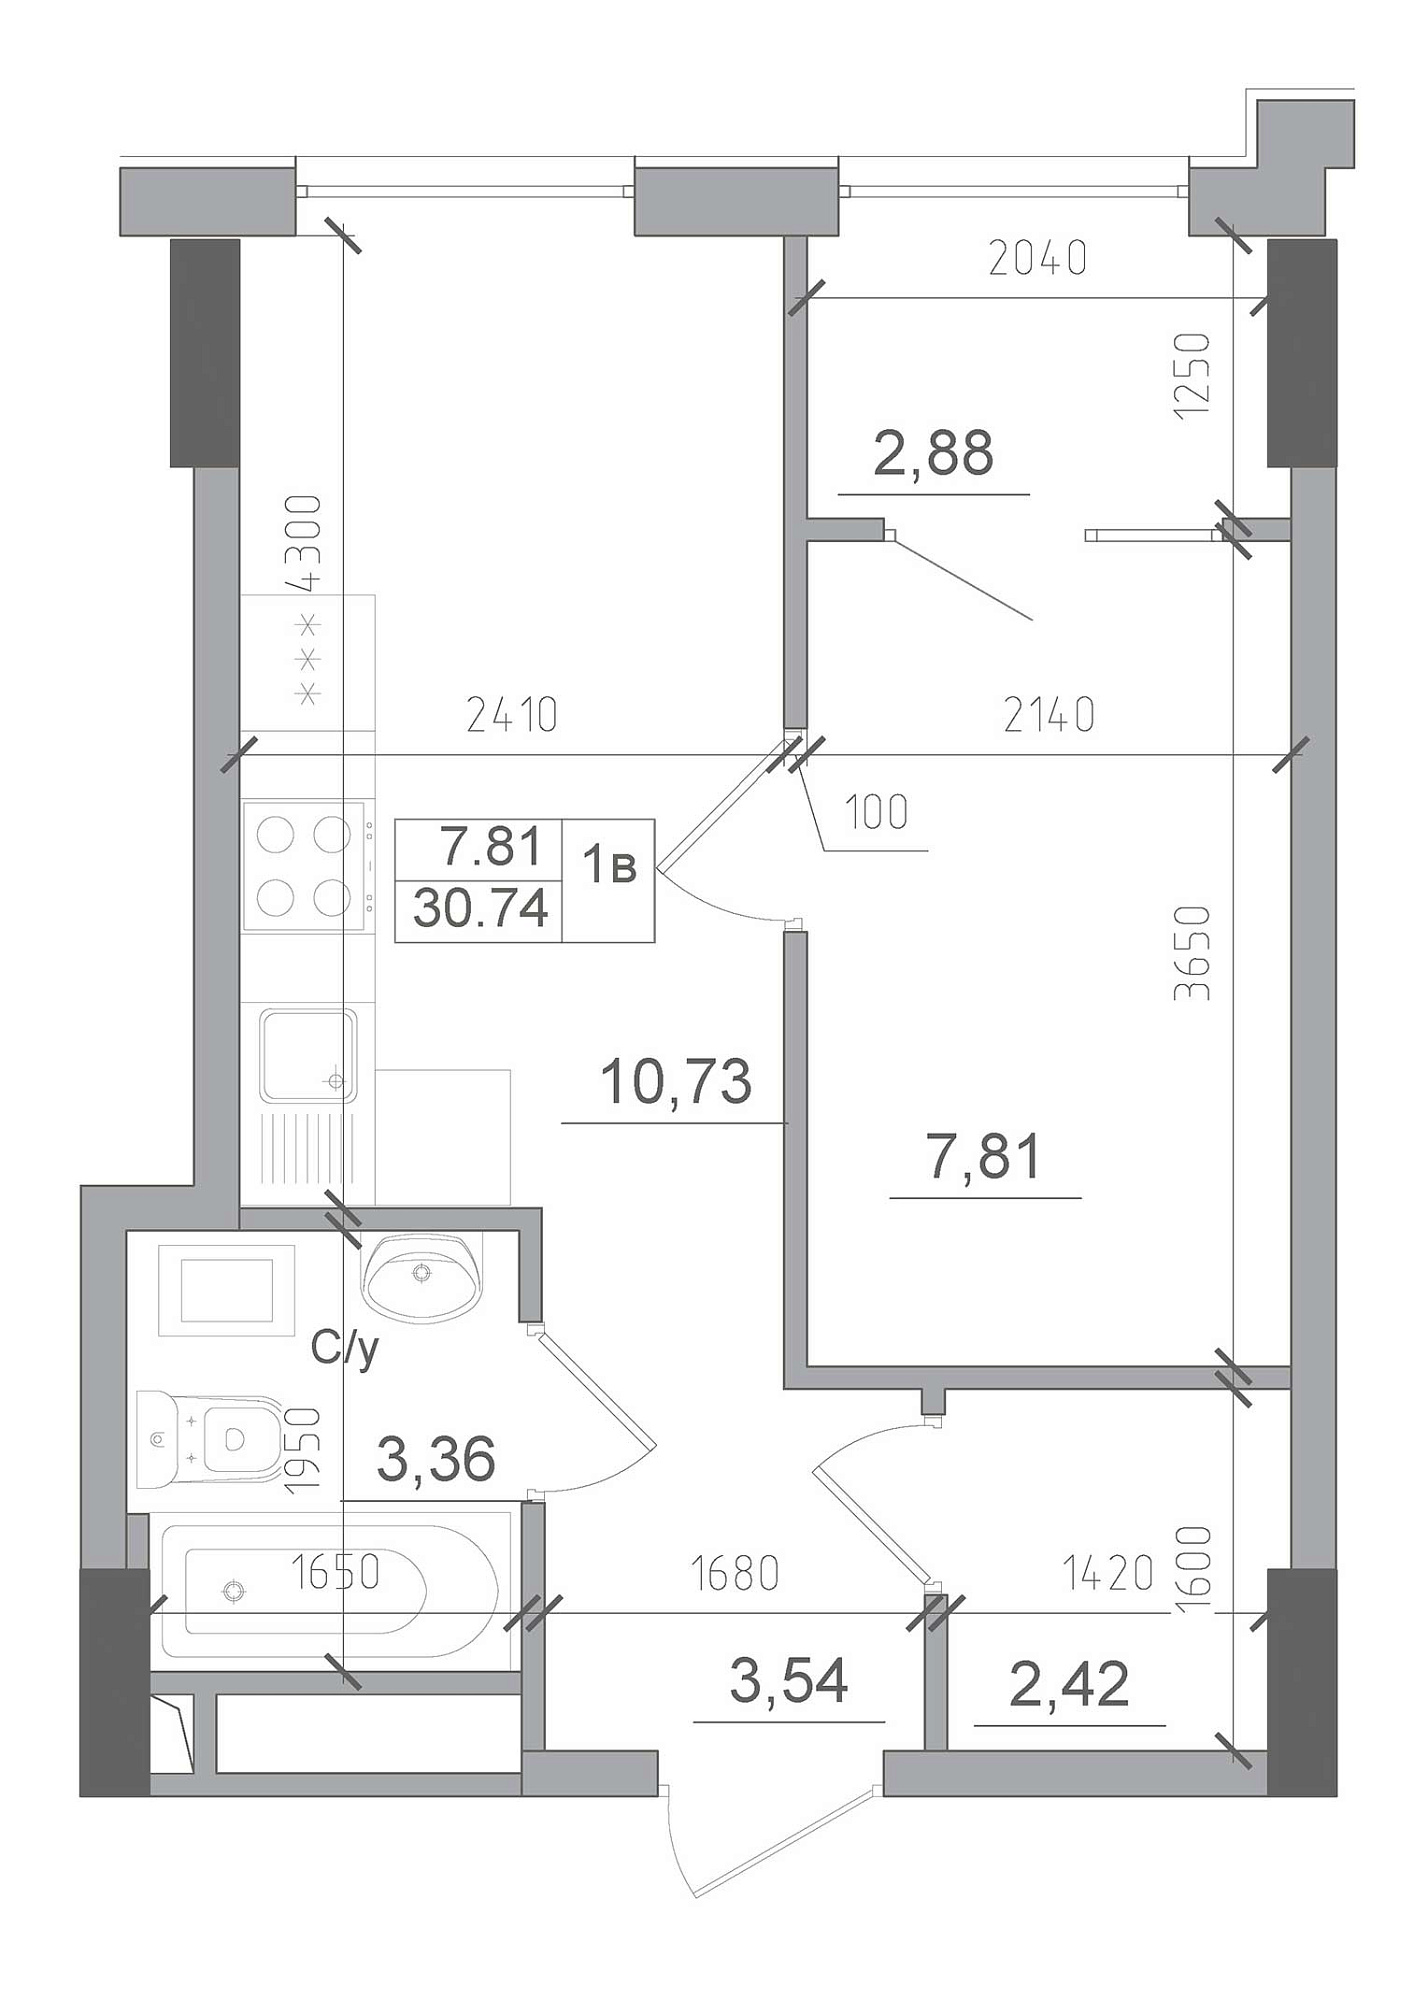 Планировка 1-к квартира площей 30.74м2, AB-22-03/00003.